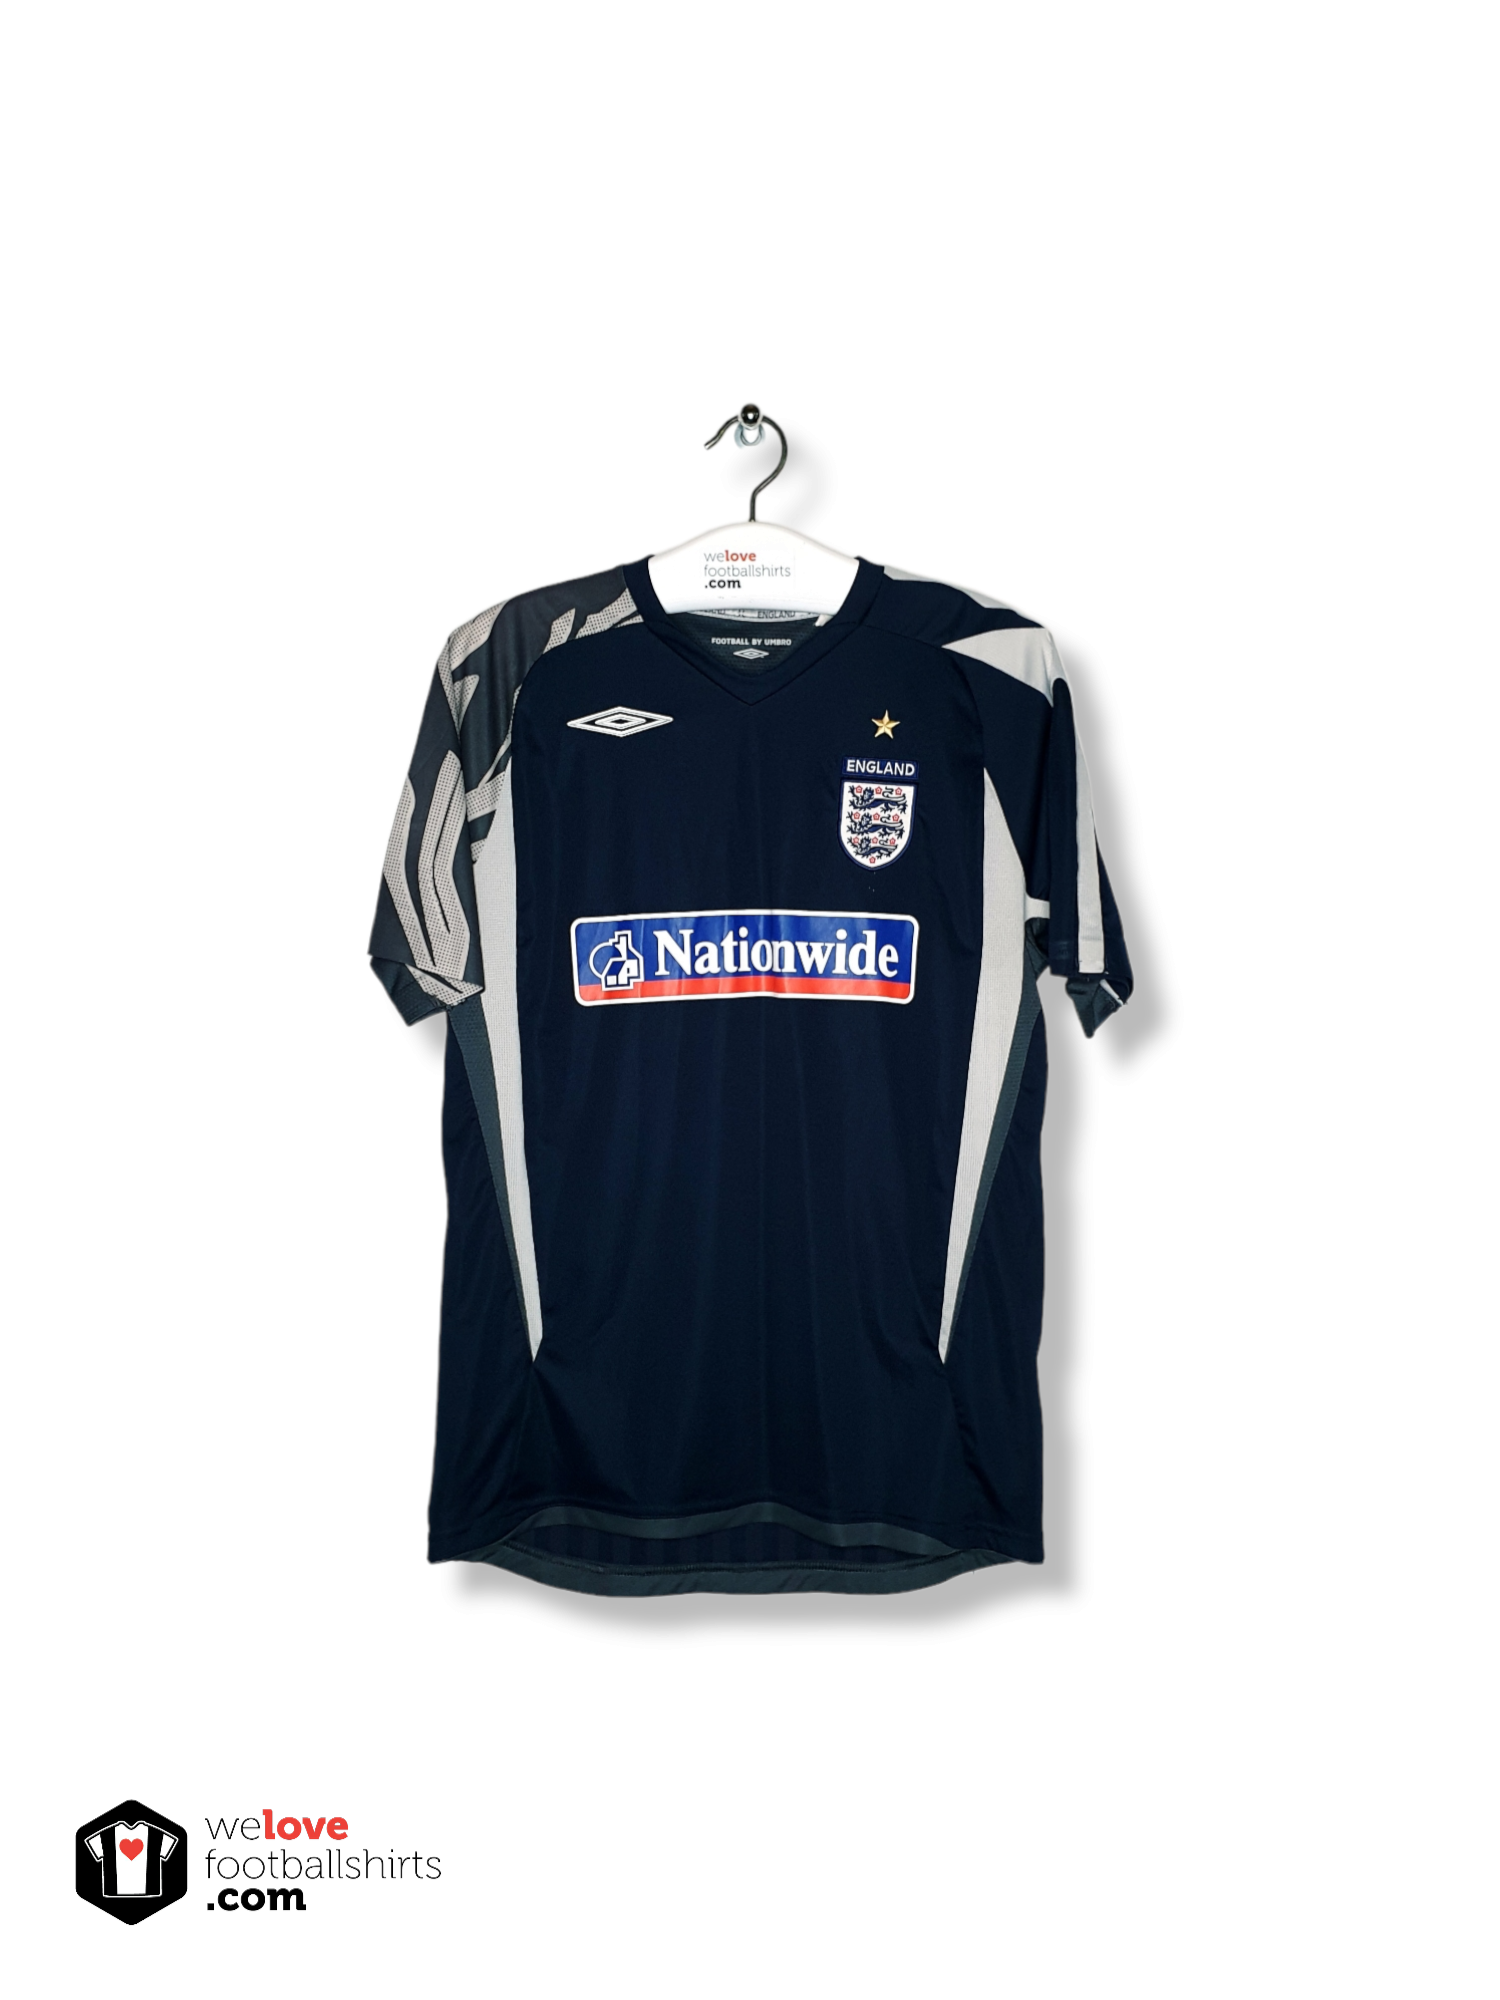 verticaal het winkelcentrum Aanmoediging Umbro training shirt England World Cup 2006 - Welovefootballshirts.com